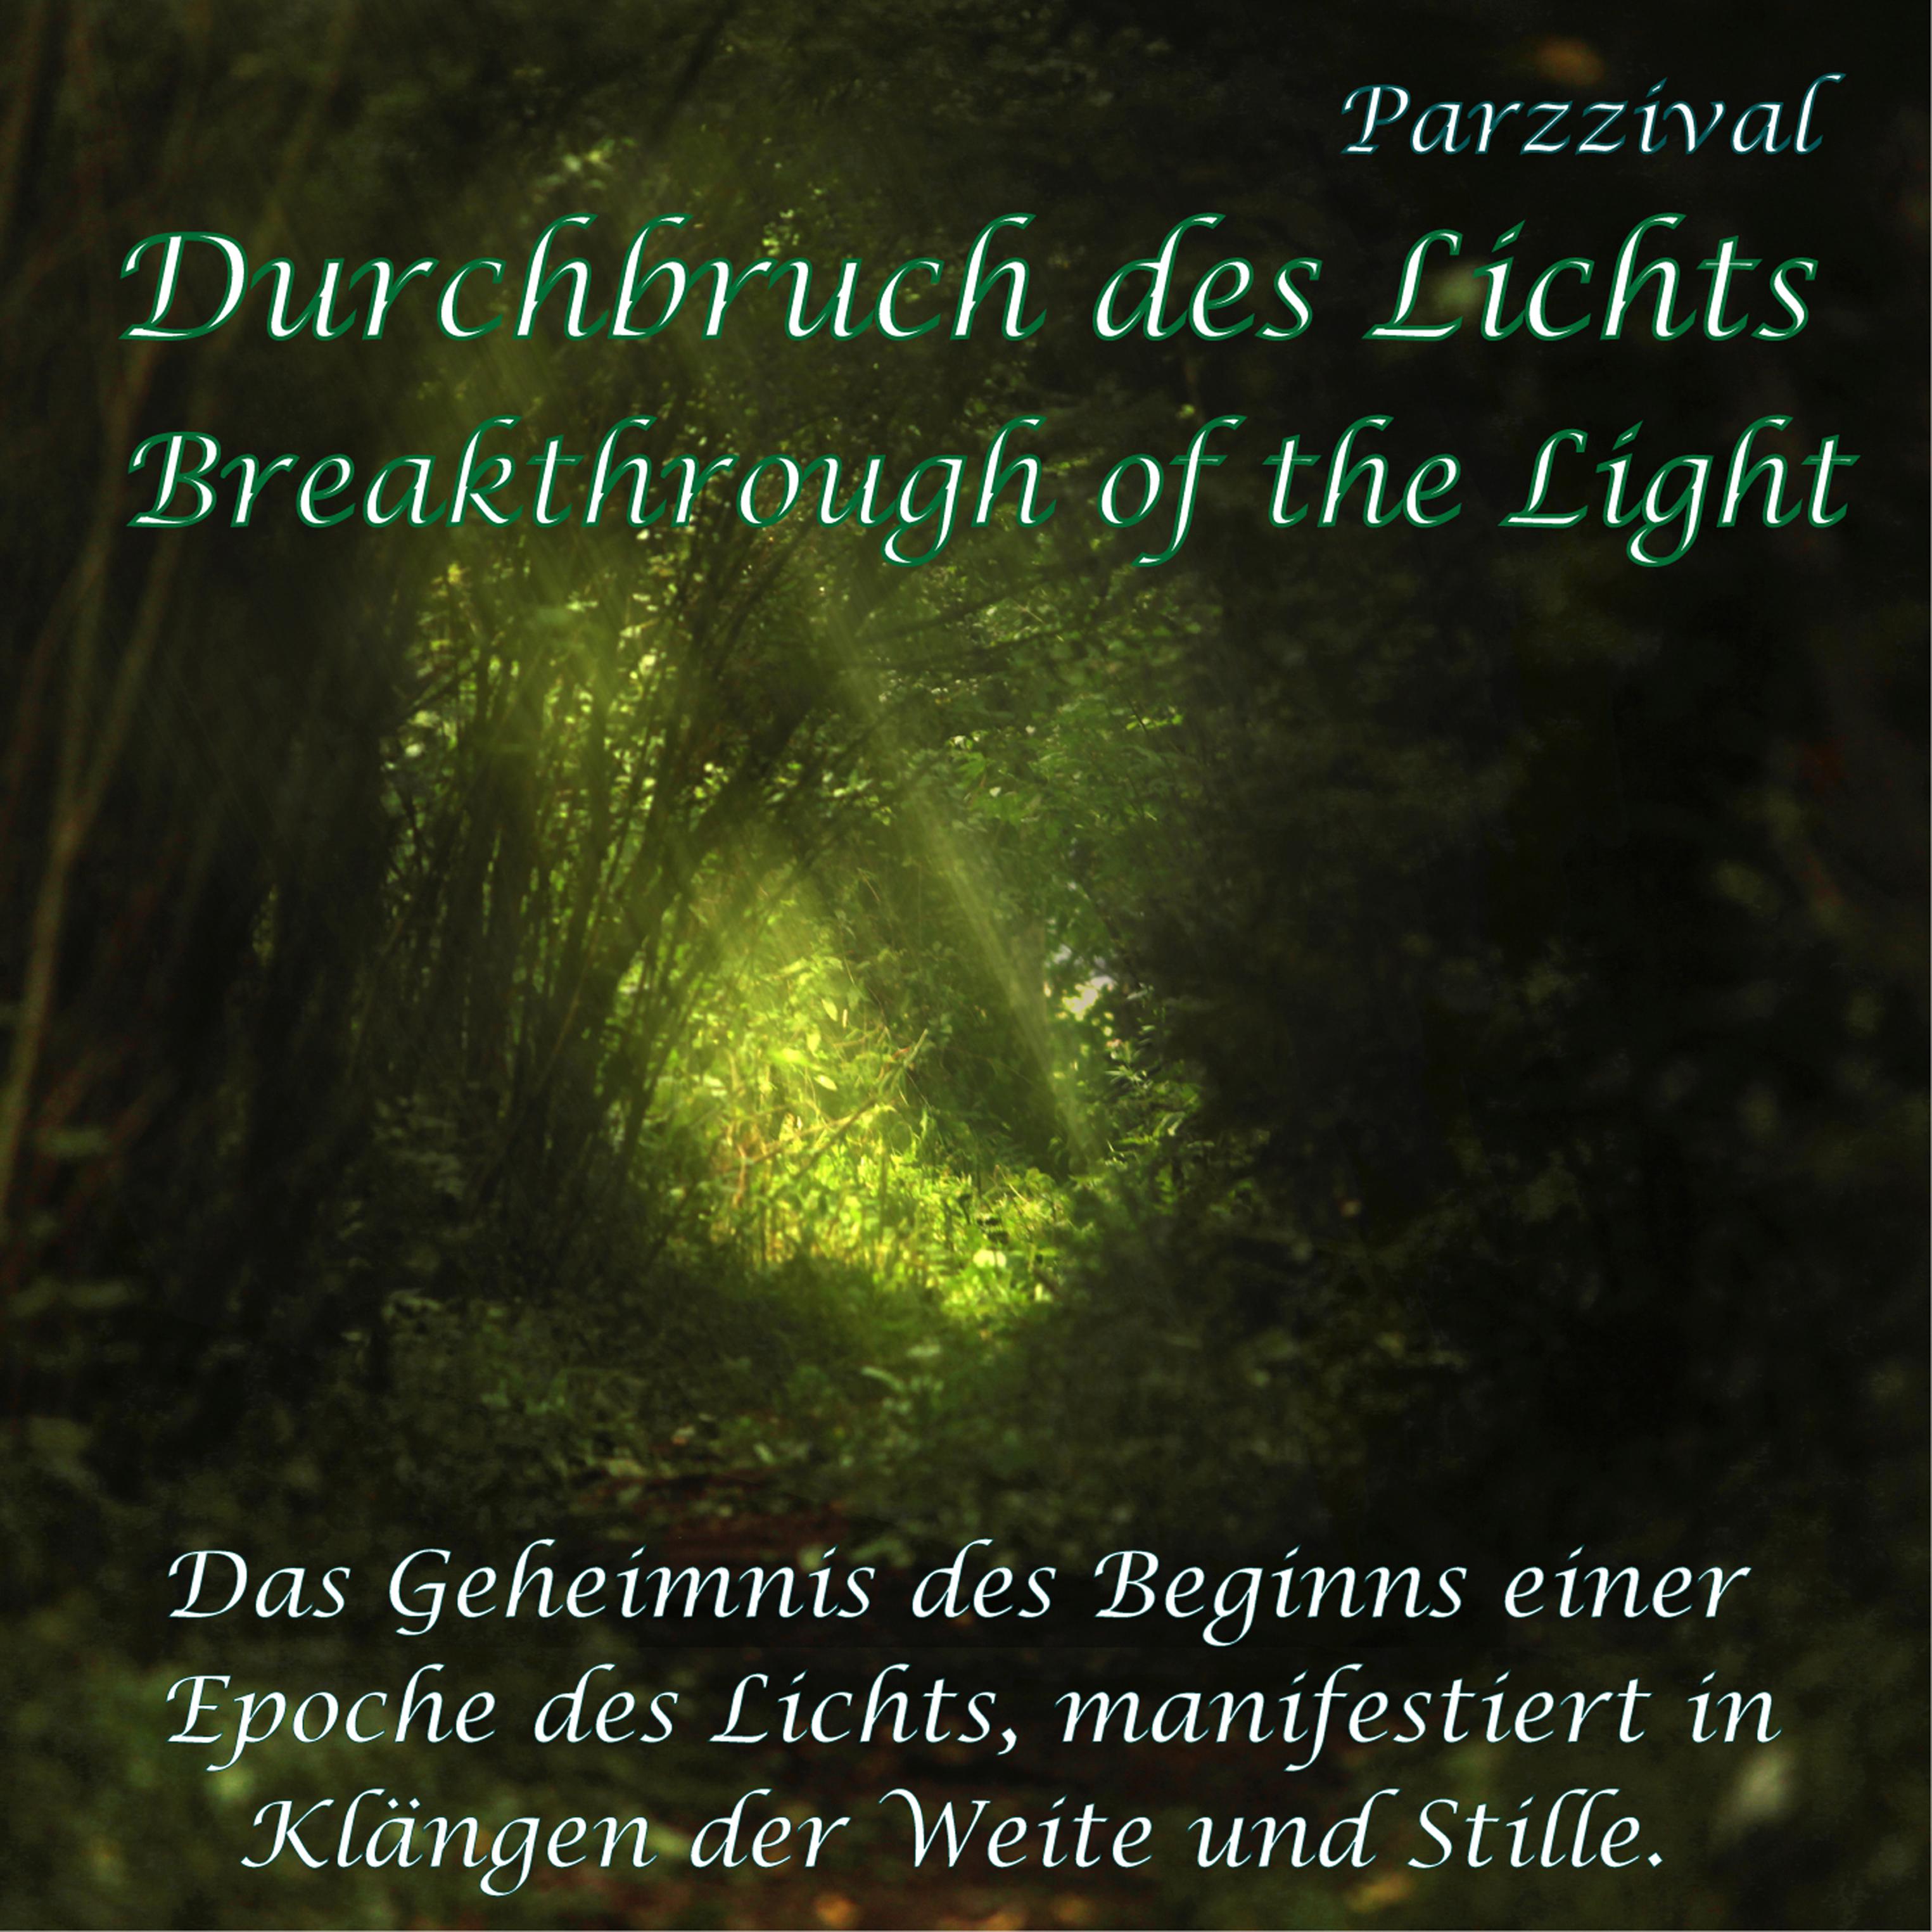 Durchbruch des Lichts  Breakthrough of the Light Das Geheimnis des Beginns einer Epoche des Lichts, manifestiert in Kl ngen der Weite und Stille